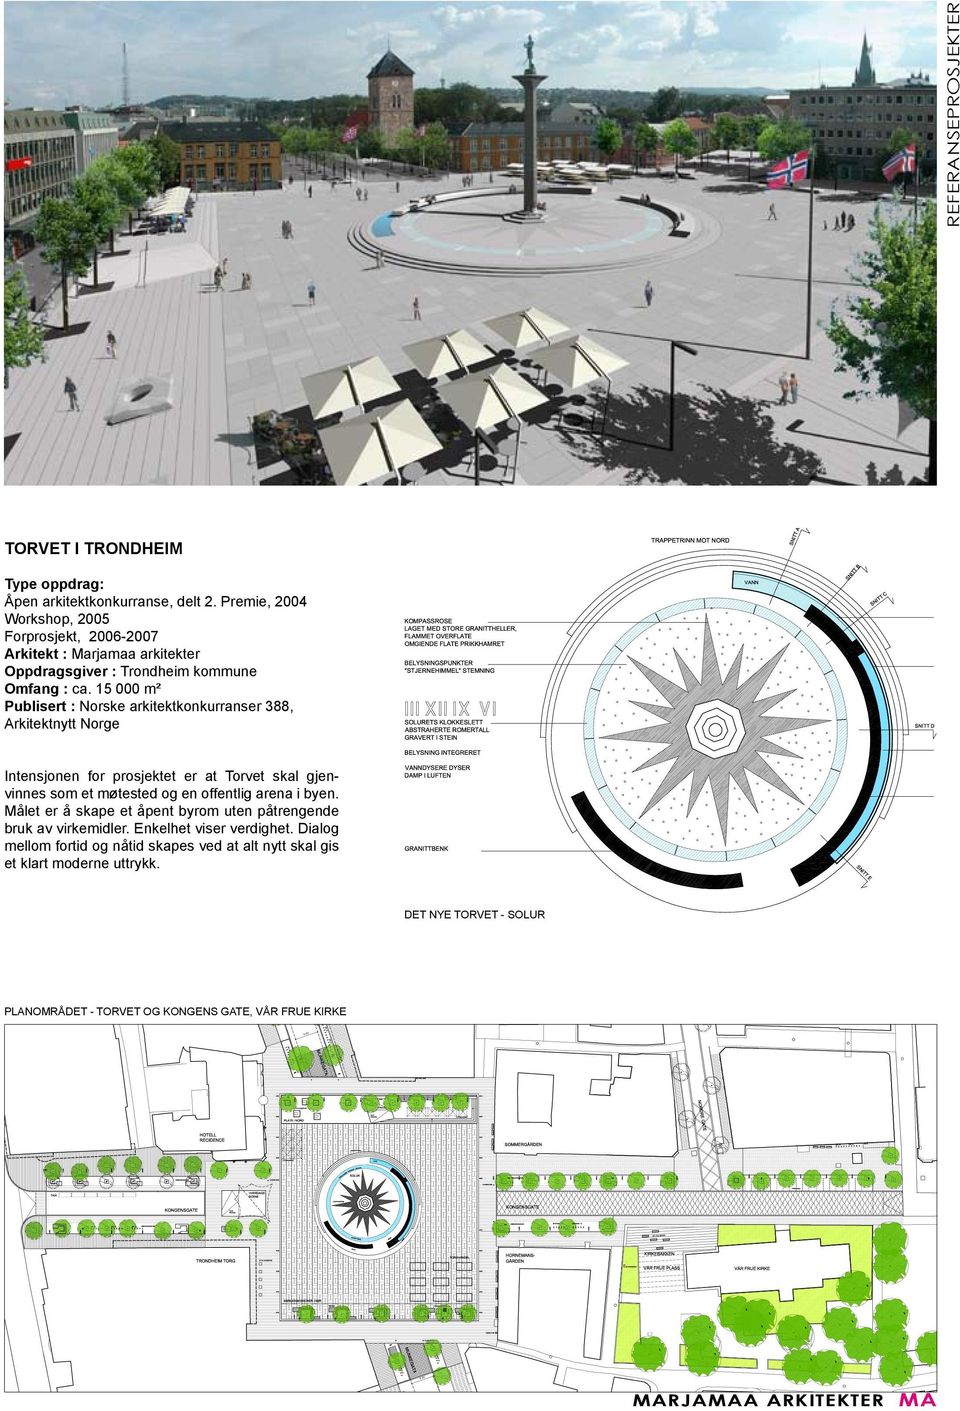 15 000 m² Publisert : Norske arkitektkonkurranser 388, Arkitektnytt Norge Intensjonen for prosjektet er at Torvet skal gjenvinnes som et møtested og en offentlig